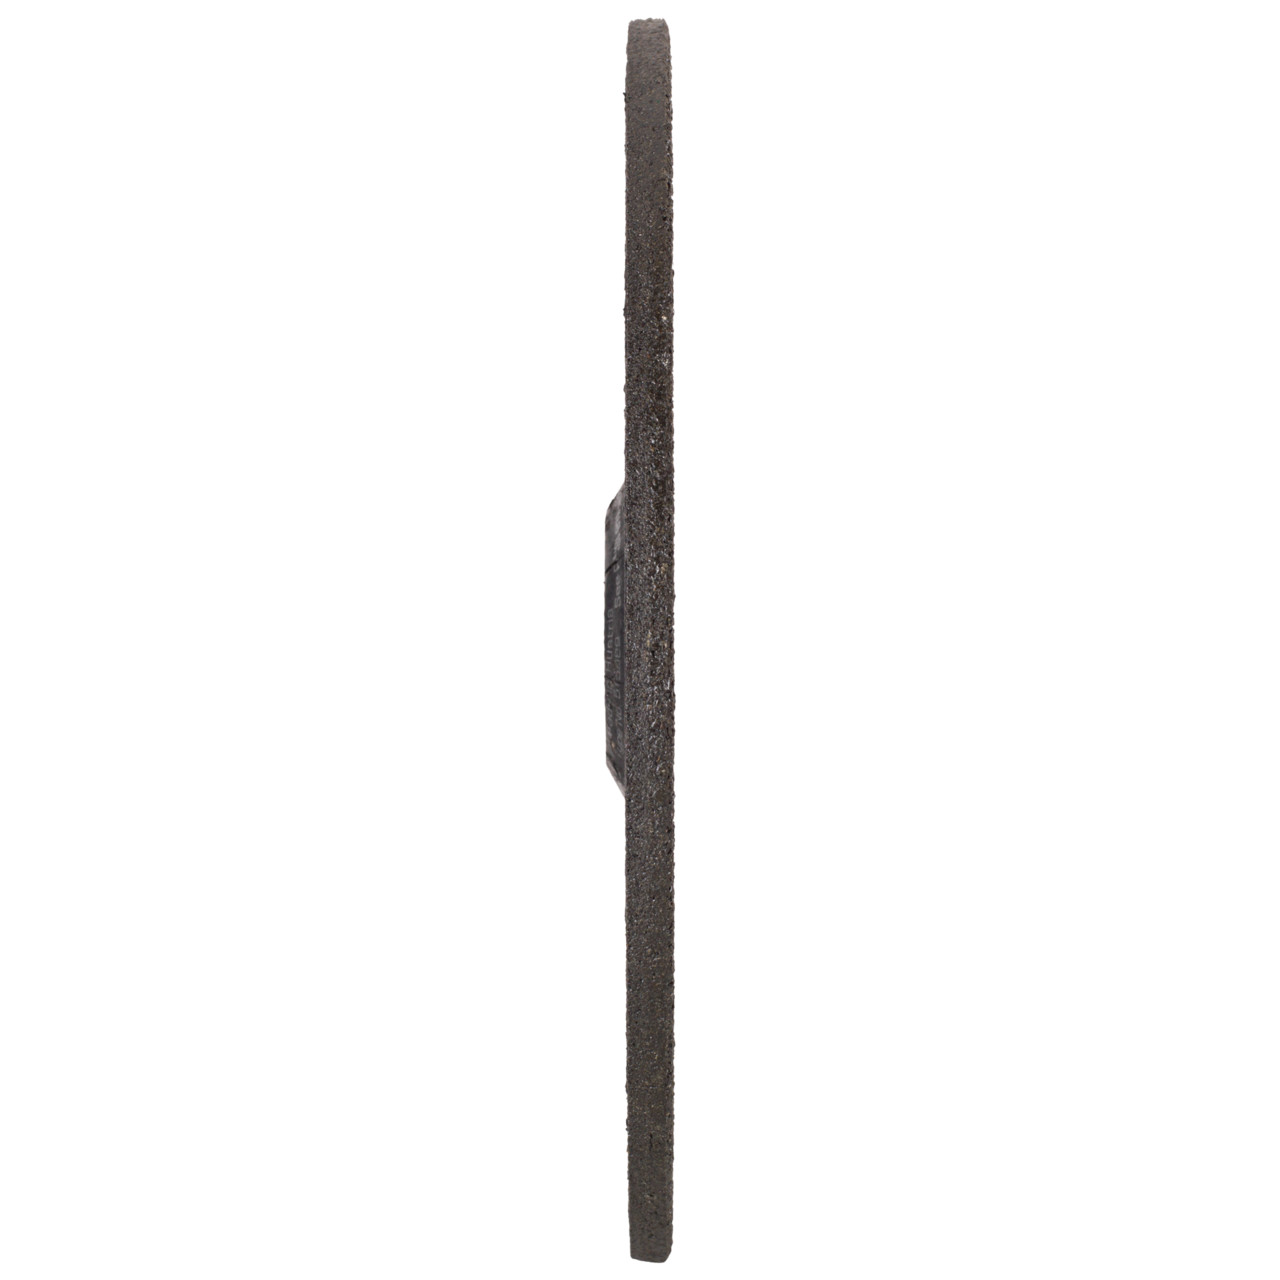 TYROLIT slijpschijf DxUxH 230x8x22.23 Silentio voor roestvrij staal, vorm: 27 - offset-uitvoering, Art. 515989